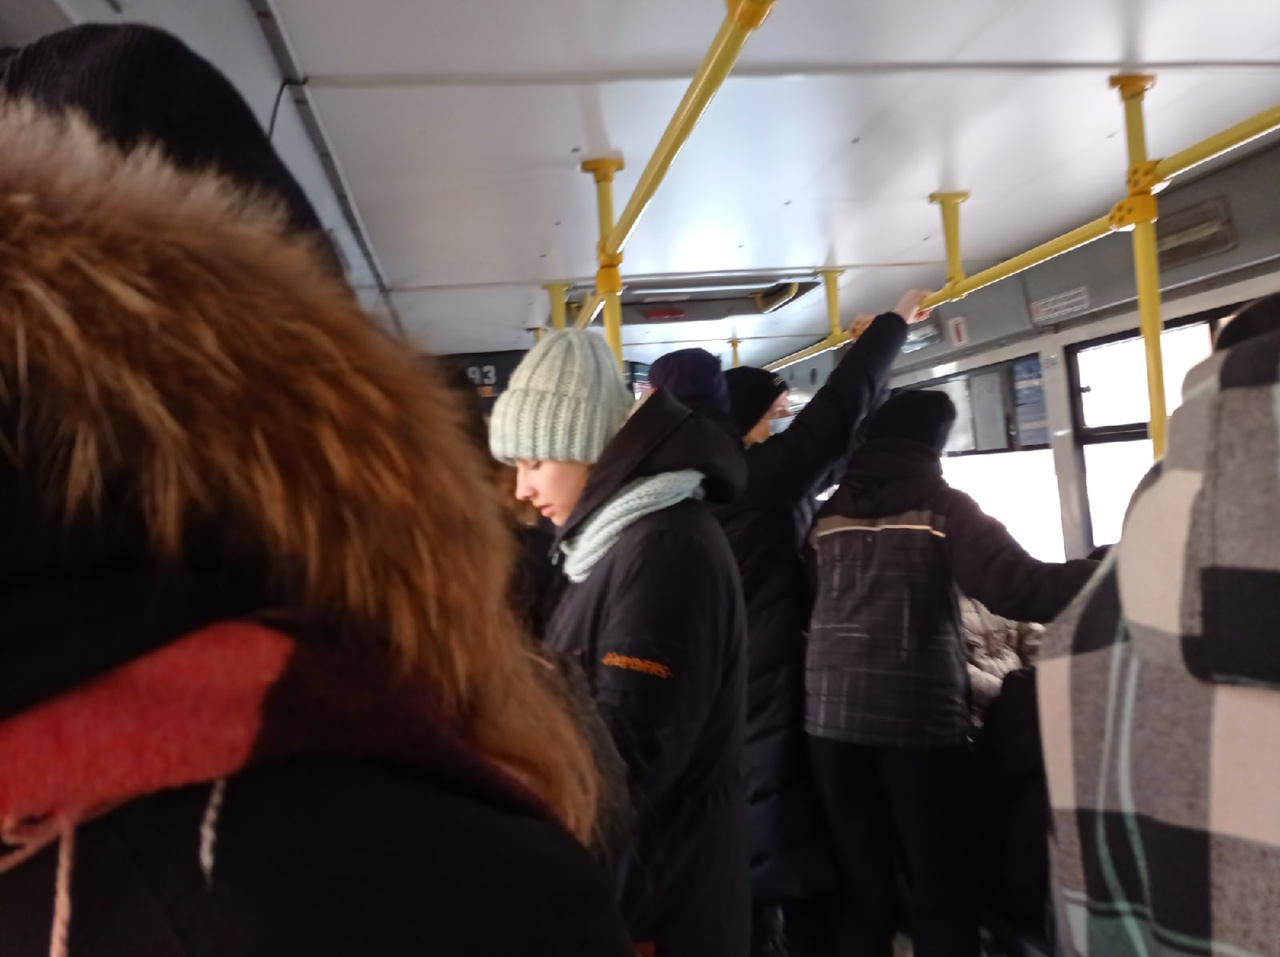 Бесплатный транспорт из-за непогоды: как долго будет "снежный билет" в Ярославле